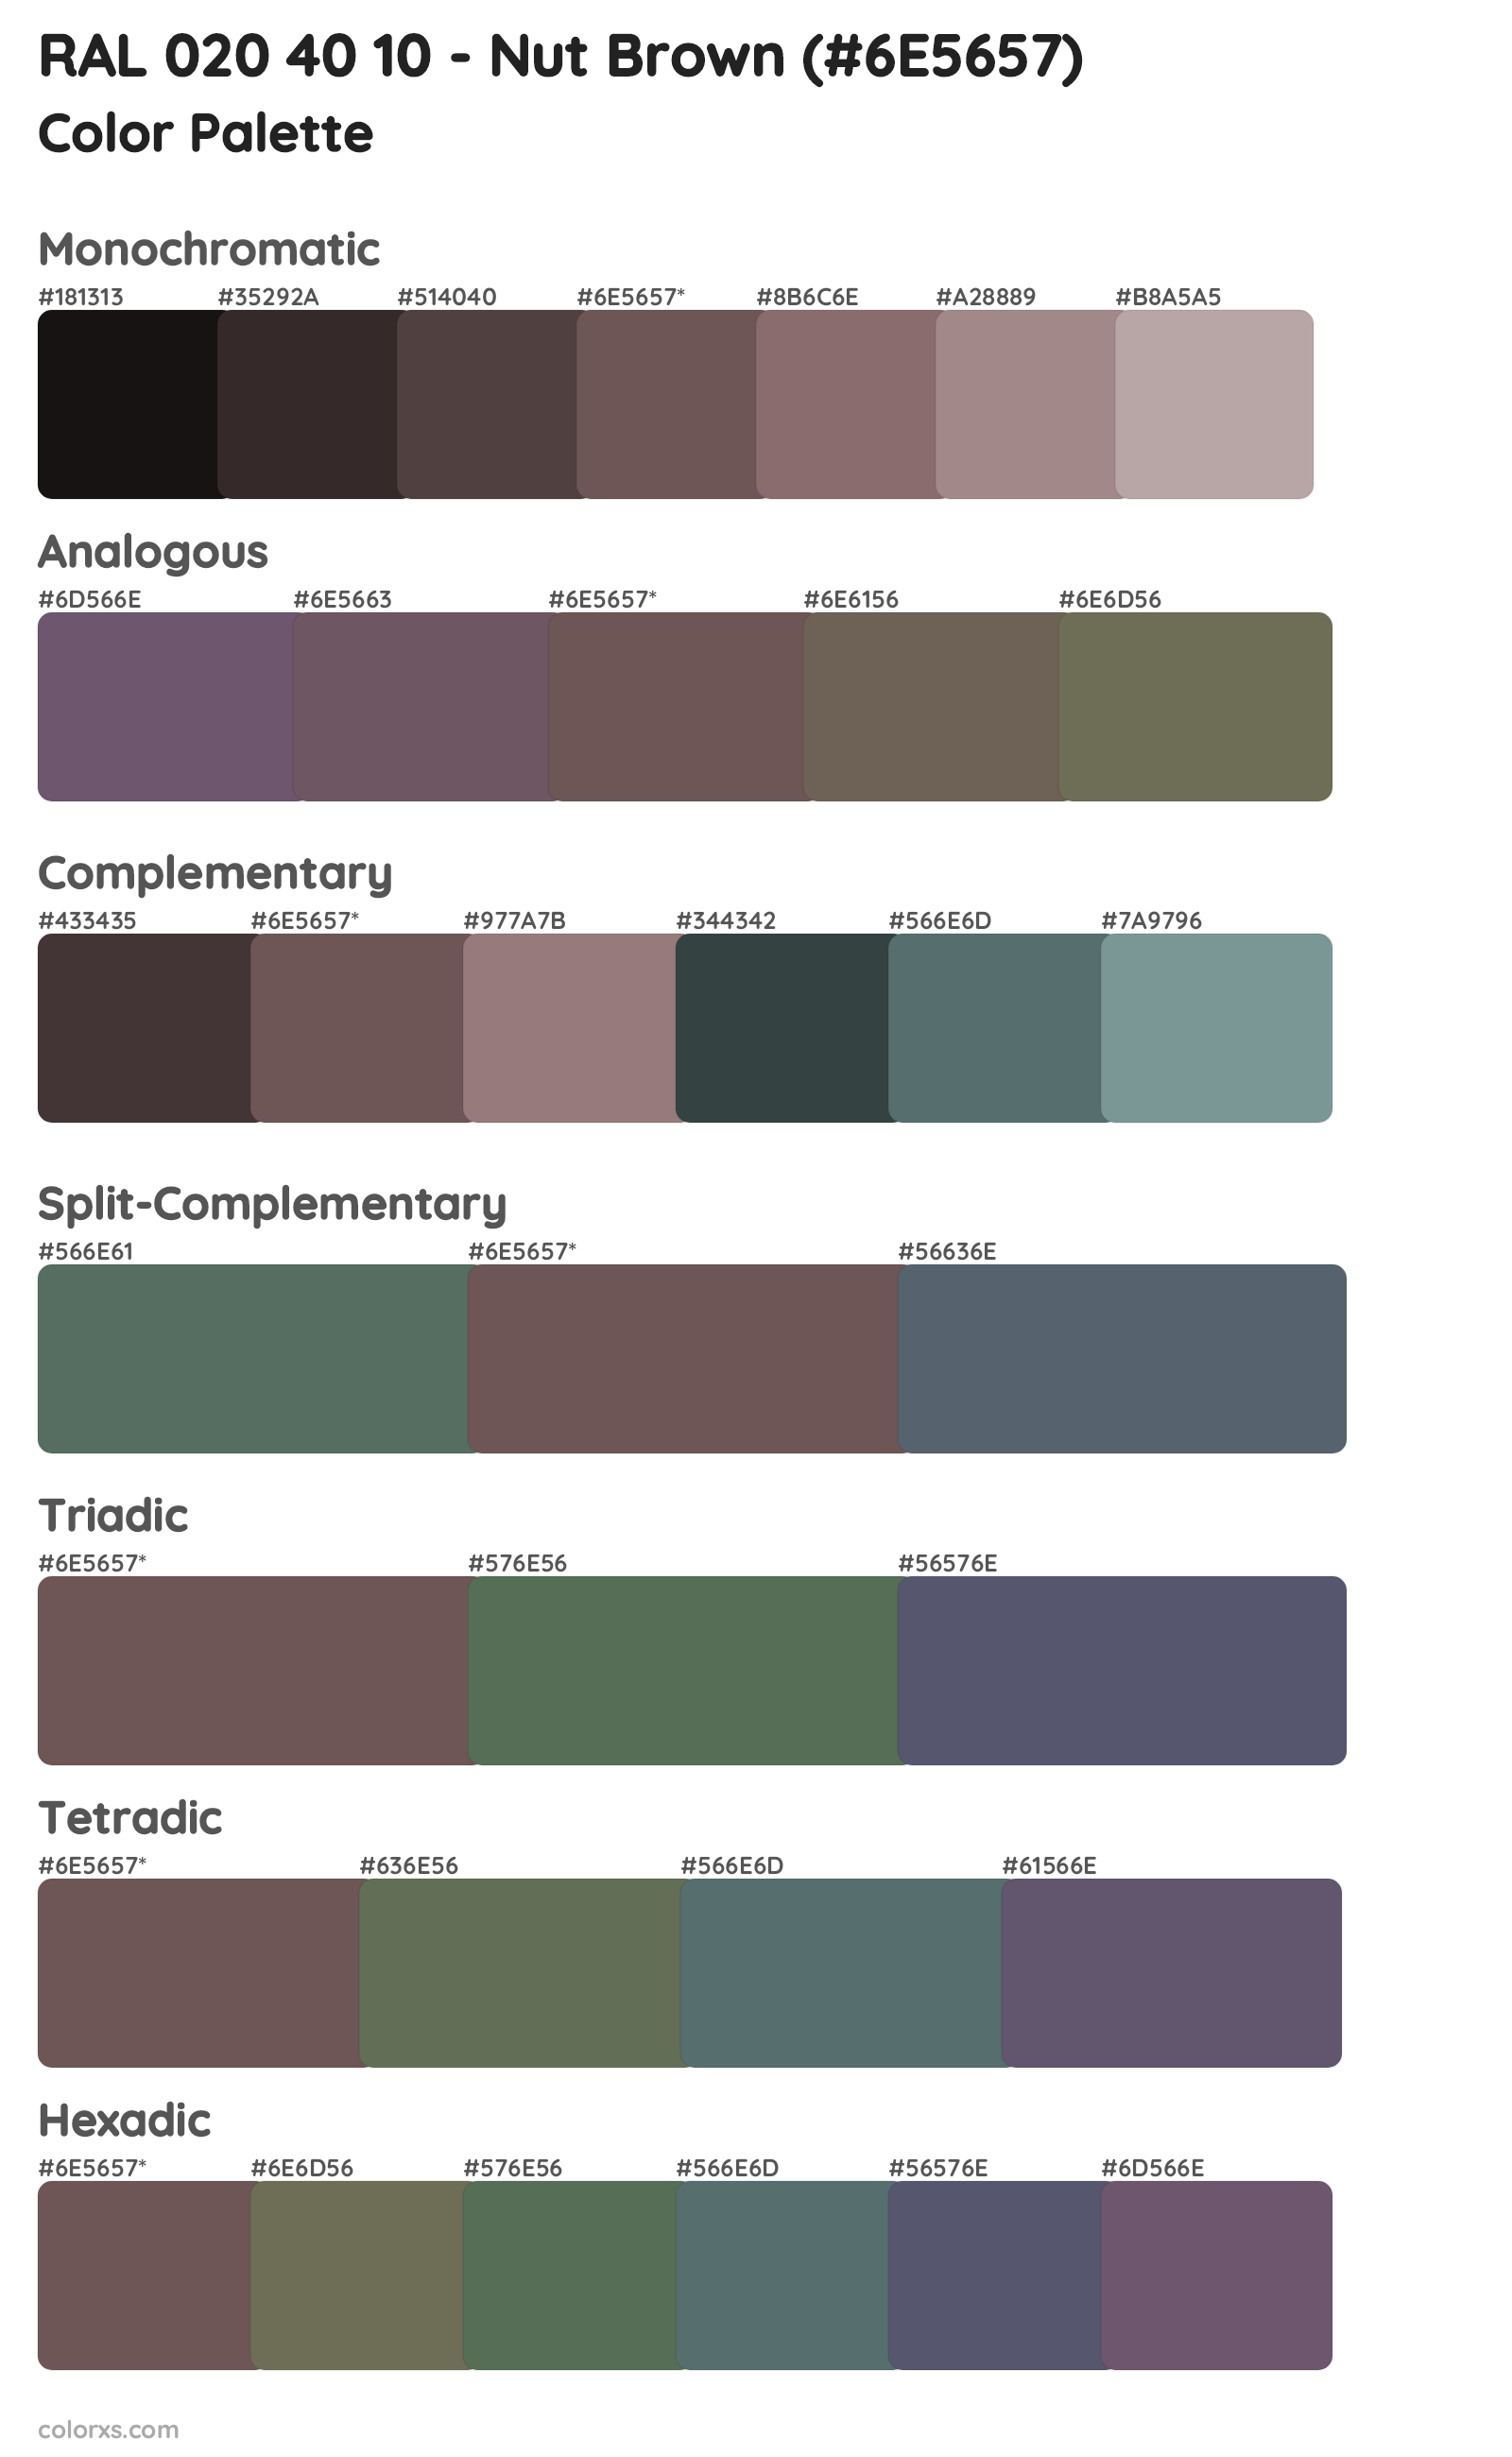 RAL 020 40 10 - Nut Brown Color Scheme Palettes